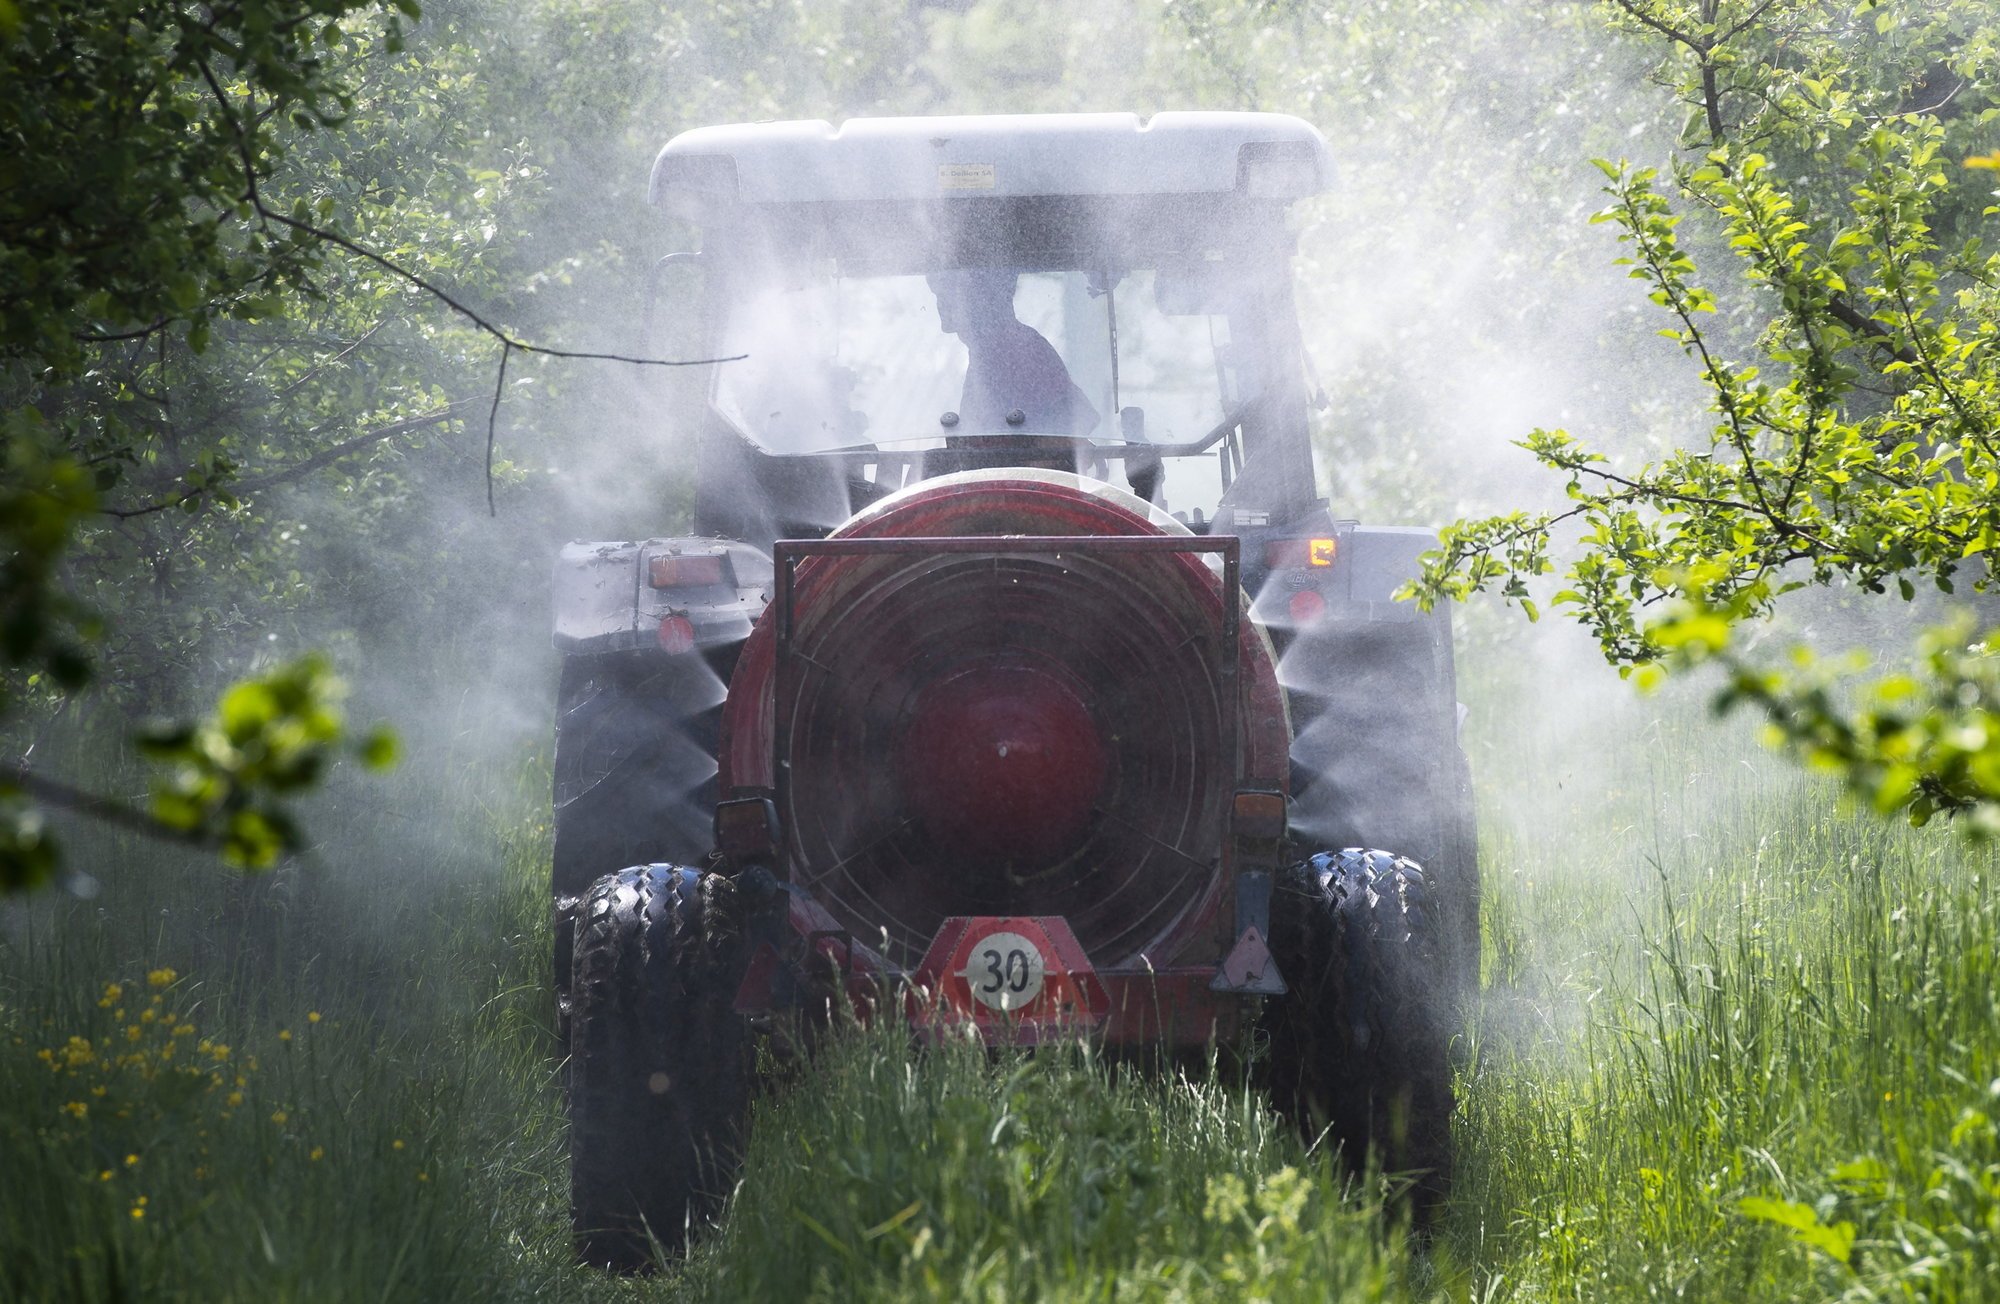 Bramois, le 12 mai 2021
Epandage de pesticides au tracteur dans une ligne d’arbre fruitier à Bramois.